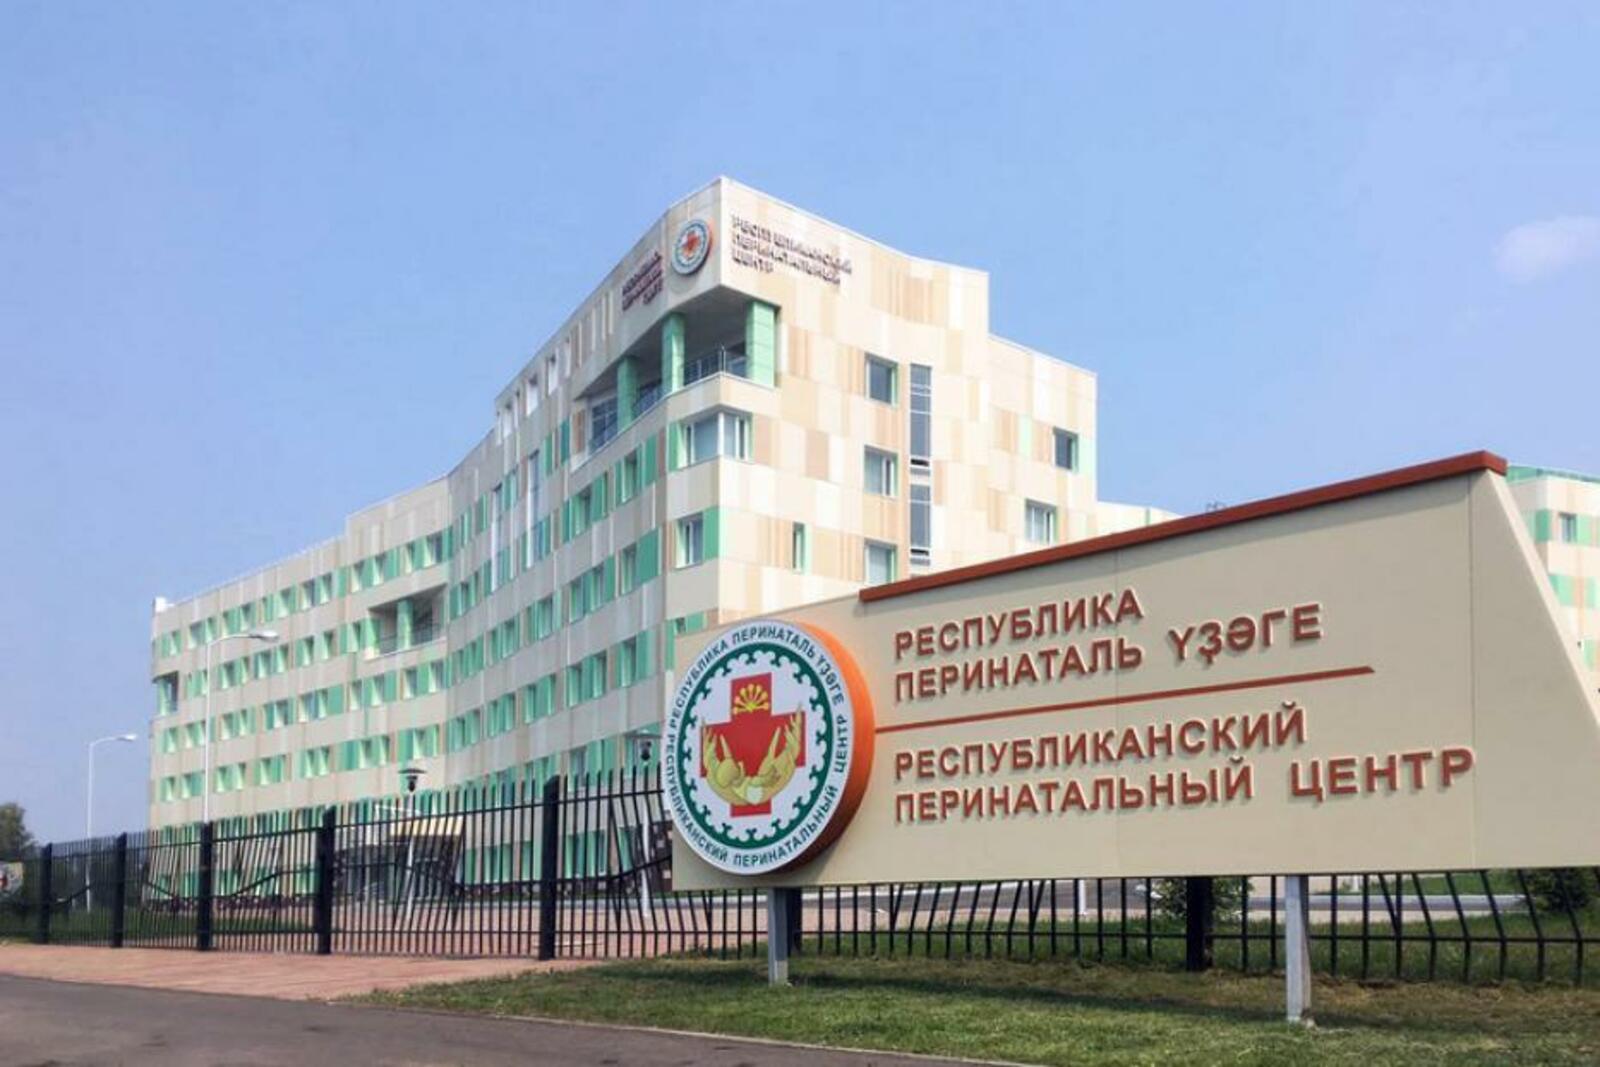 В Башкирии перинатальный центр откроется на день для гостей